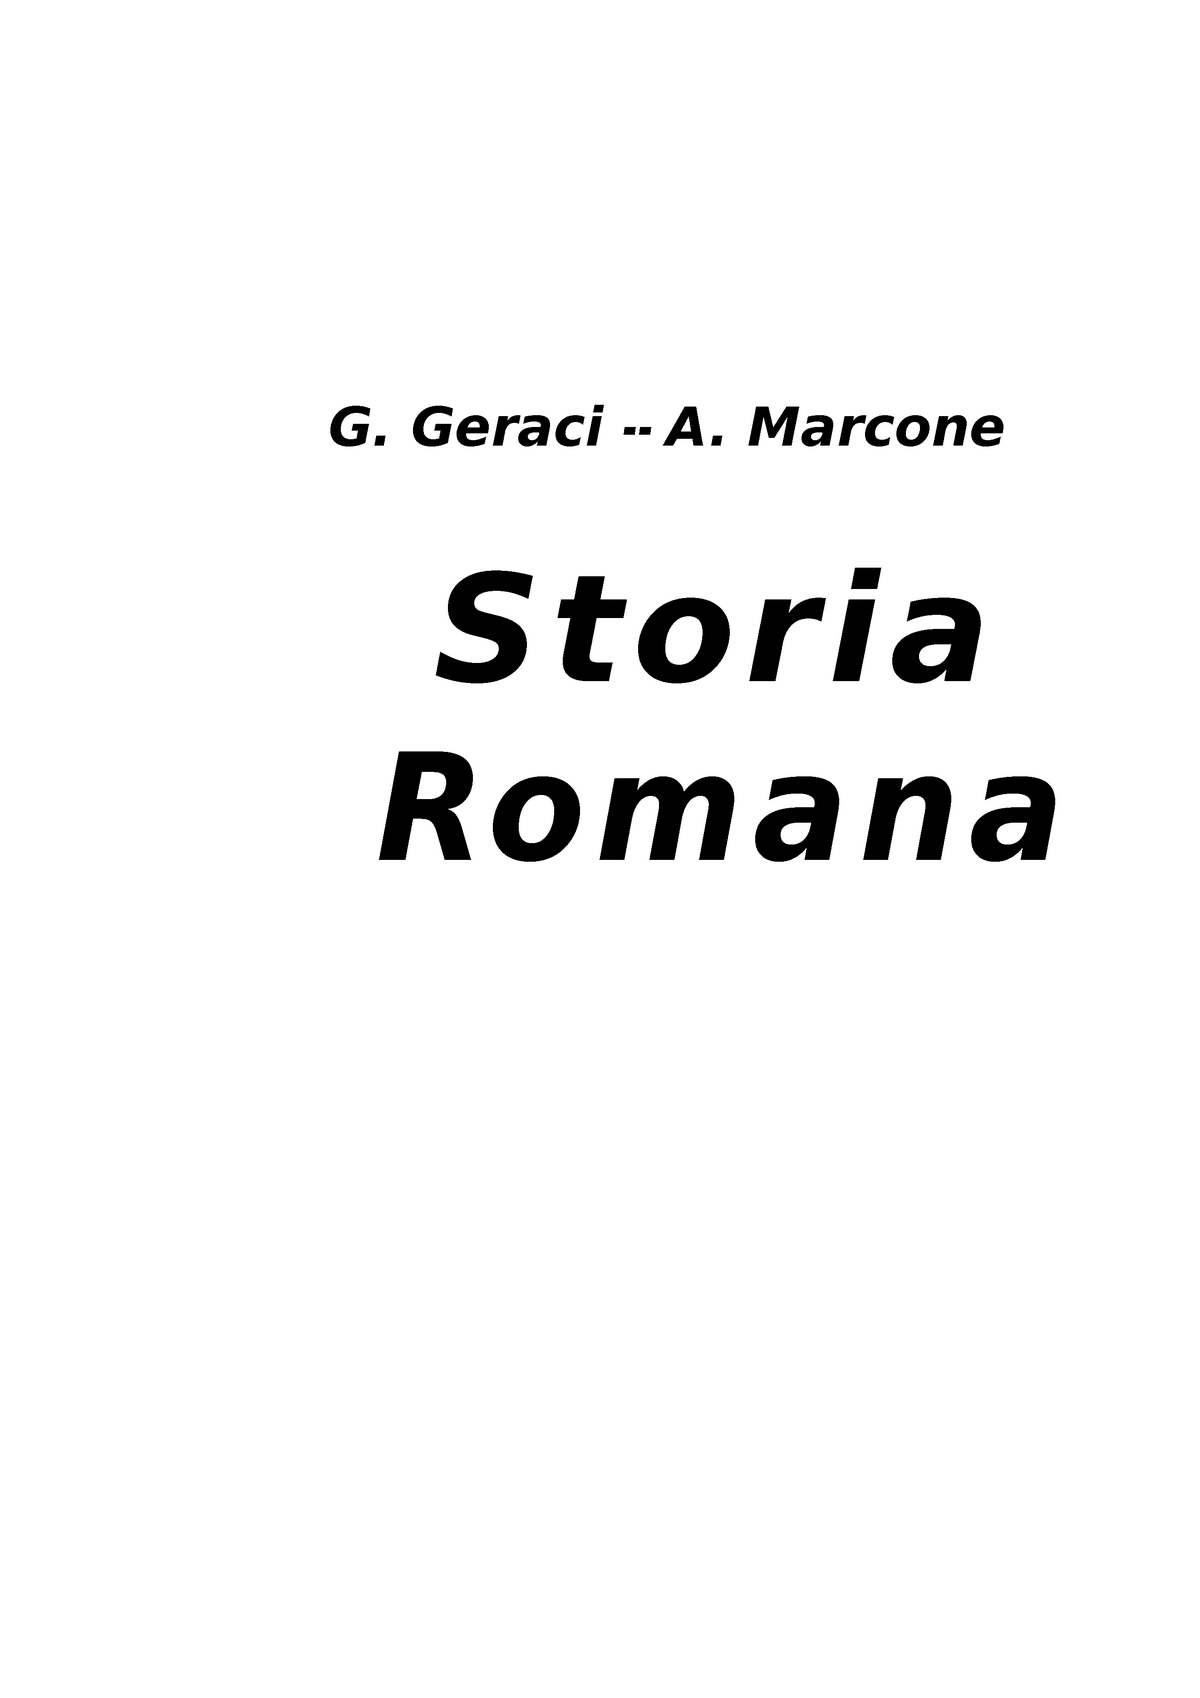 Riassunto Storia Romana Geraci Marcone - G. Geraci -‐ A. Marcone Storia  Romana Parte Prima I POPOLI - Studocu